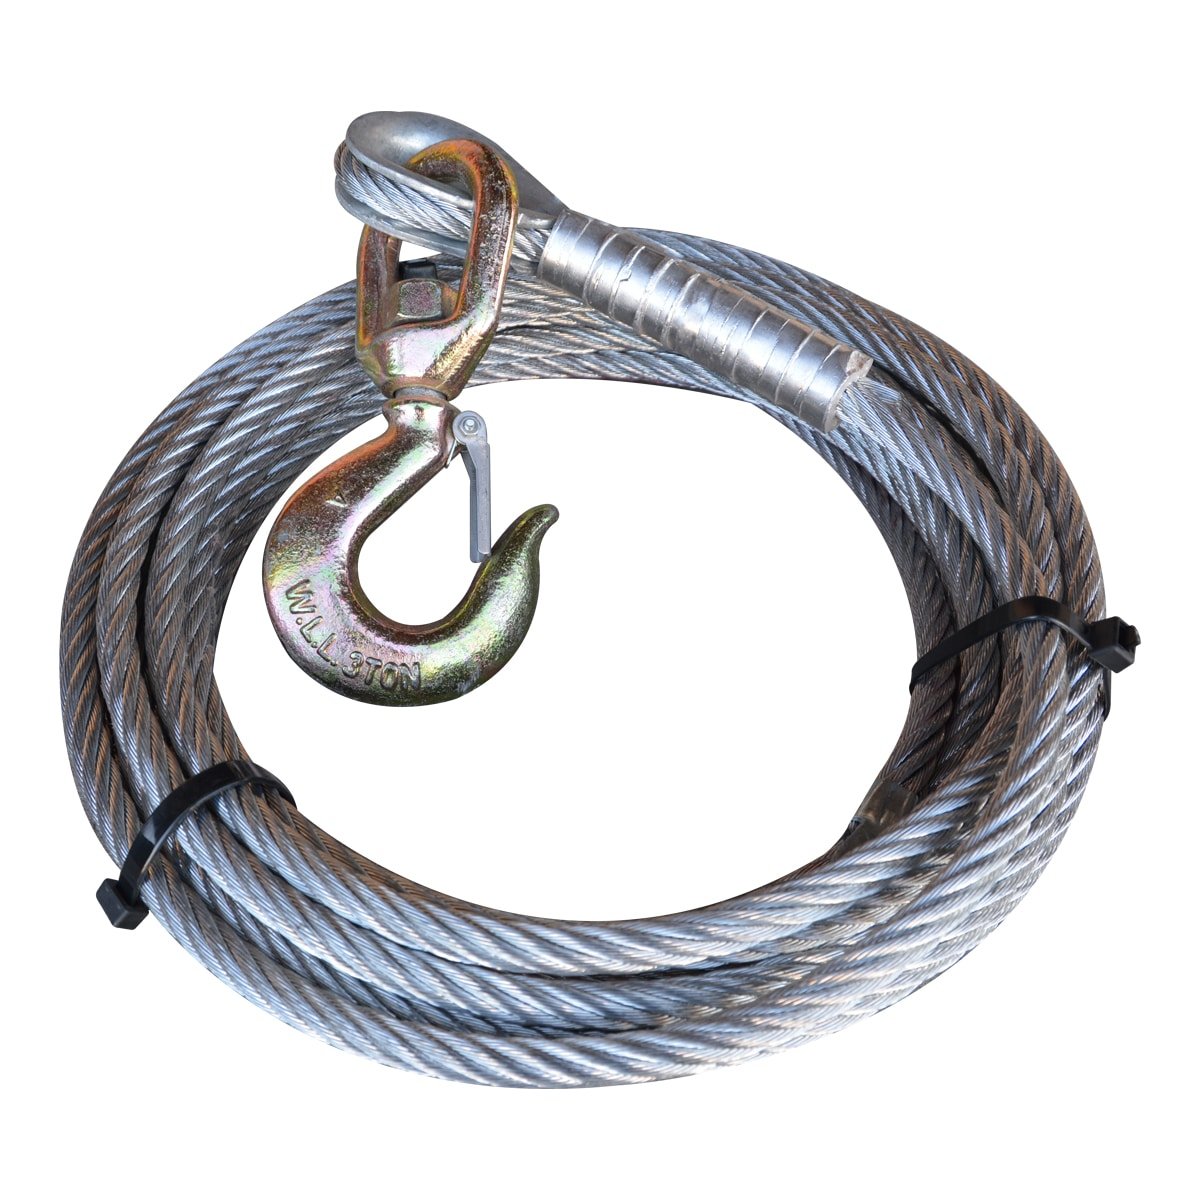 Wire rope accessories — Winchshop